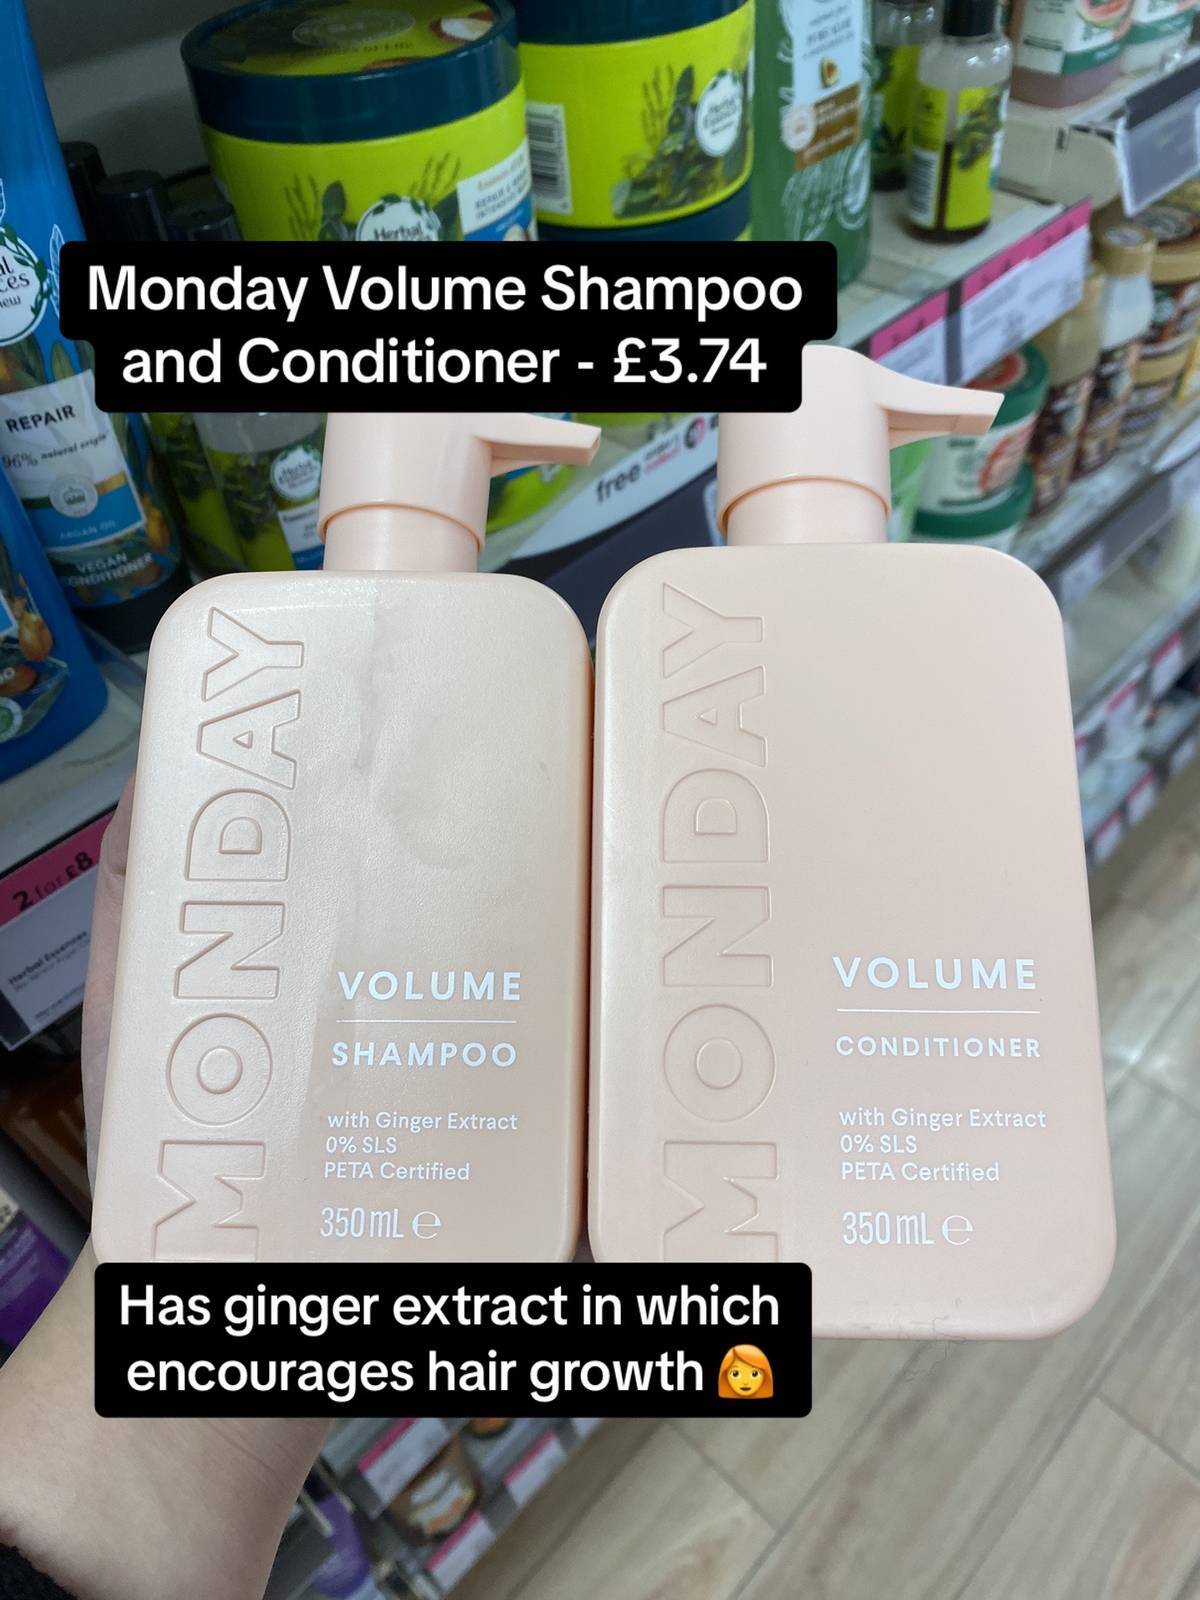 Der Mitarbeiter empfahl Monday Volume Shampoo und Conditioner für das Haarwachstum